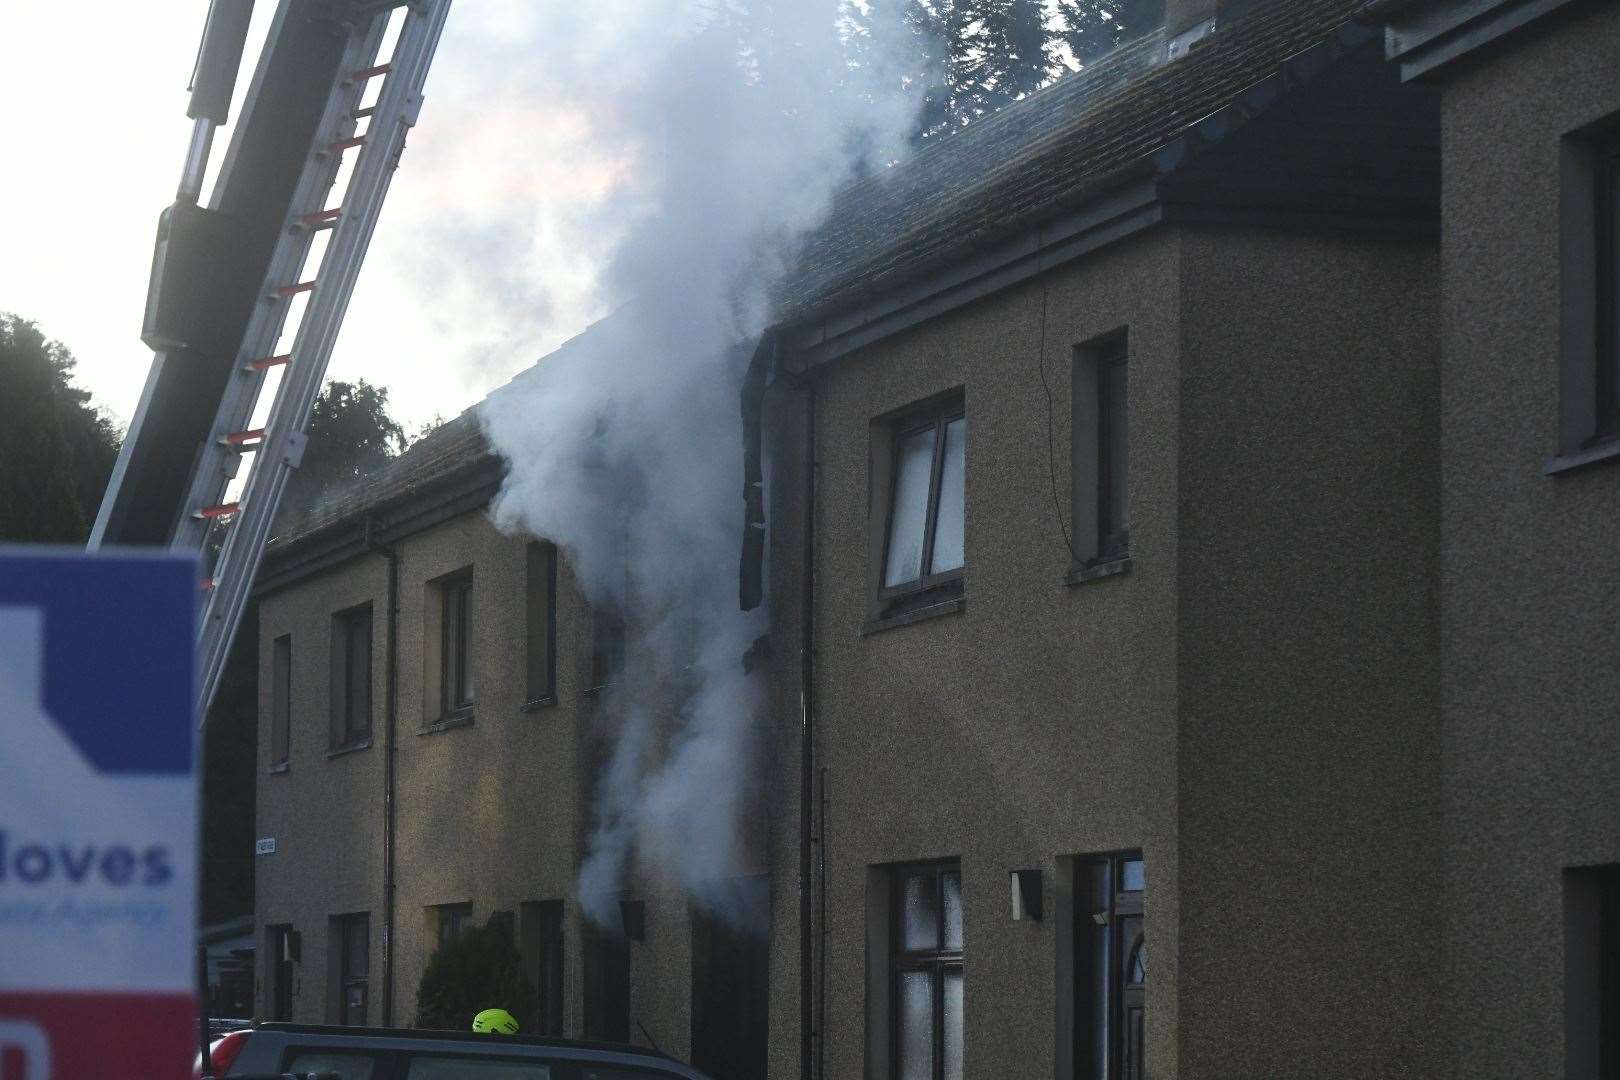 The scene of the fire on Thursday morning.